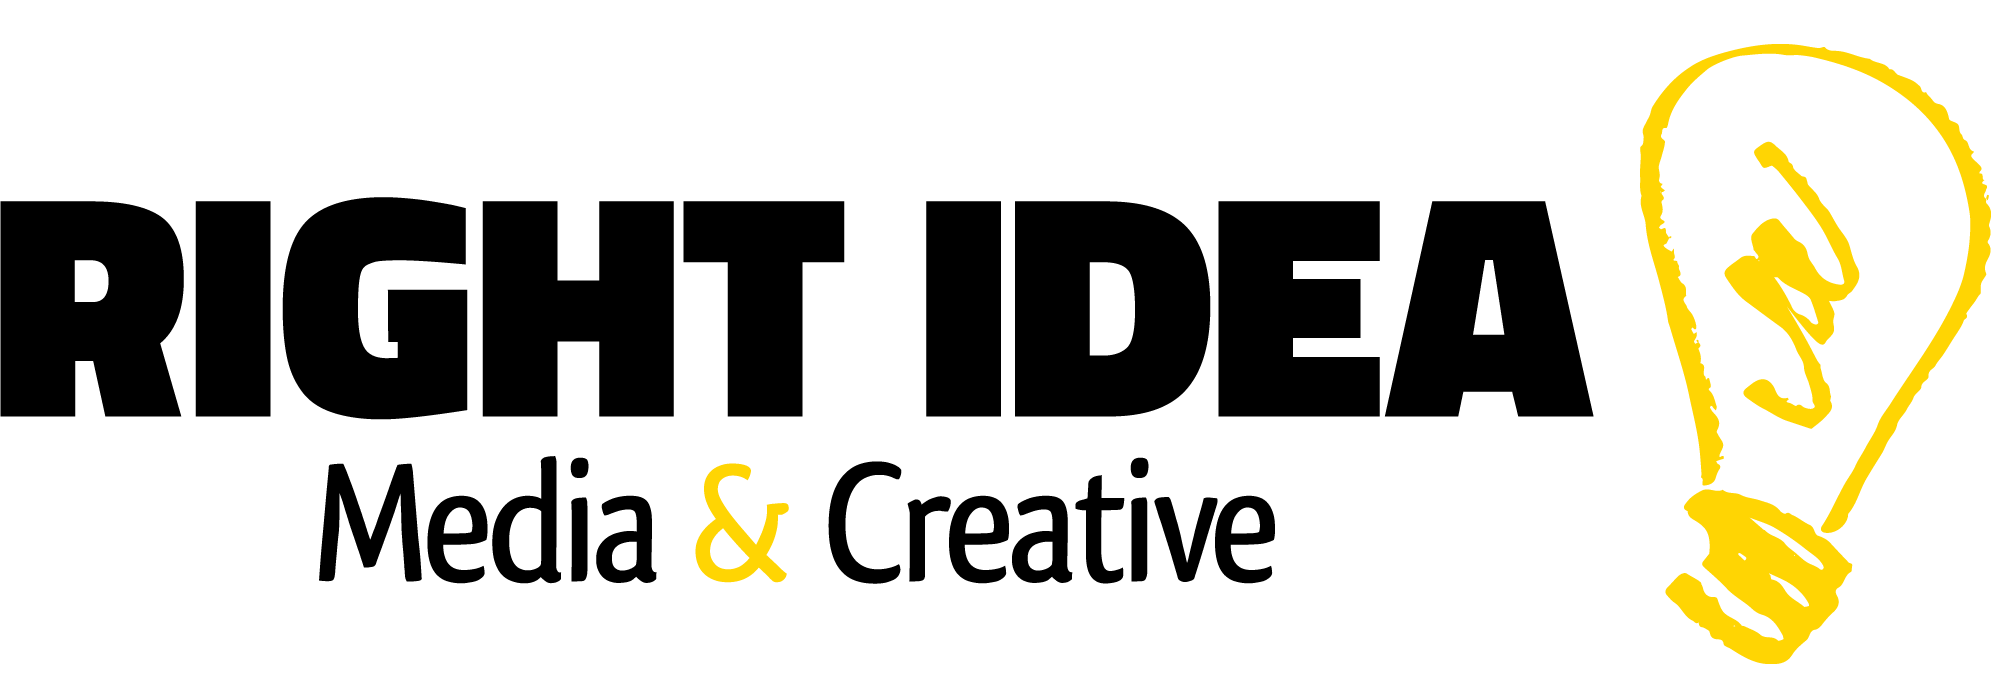 Right Idea Media & Creative logo